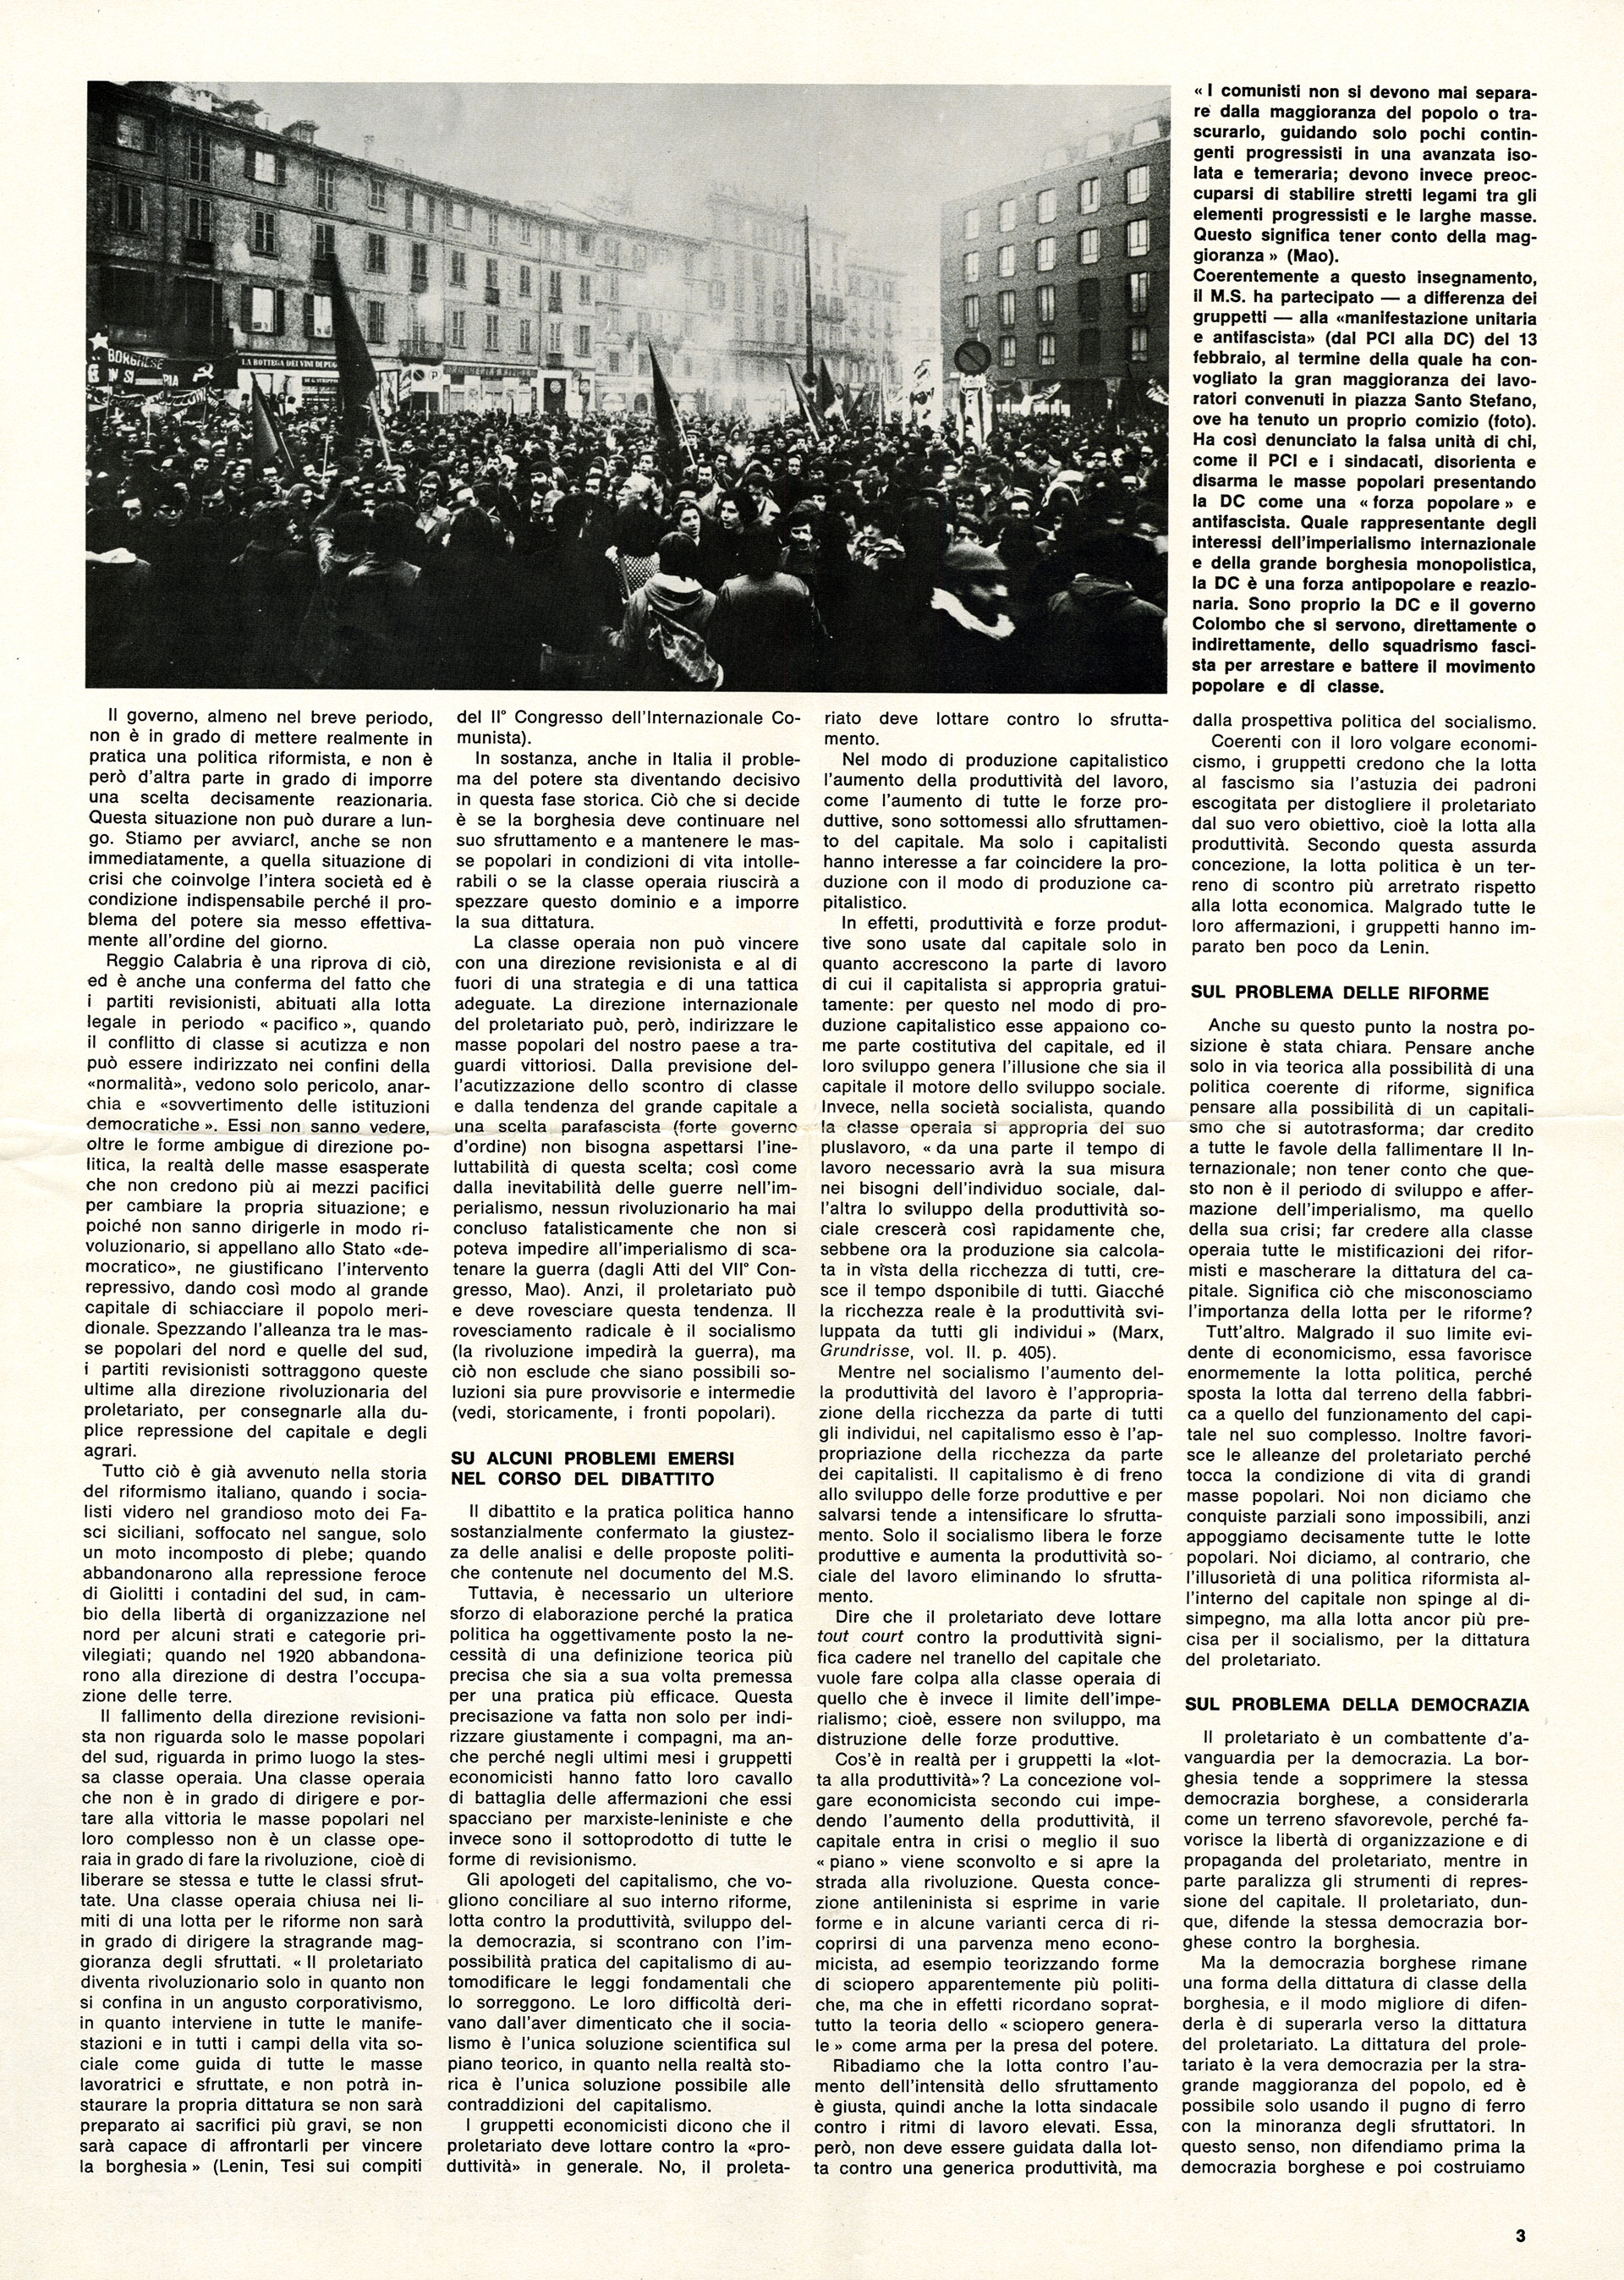 Movimento studentesco, 1971